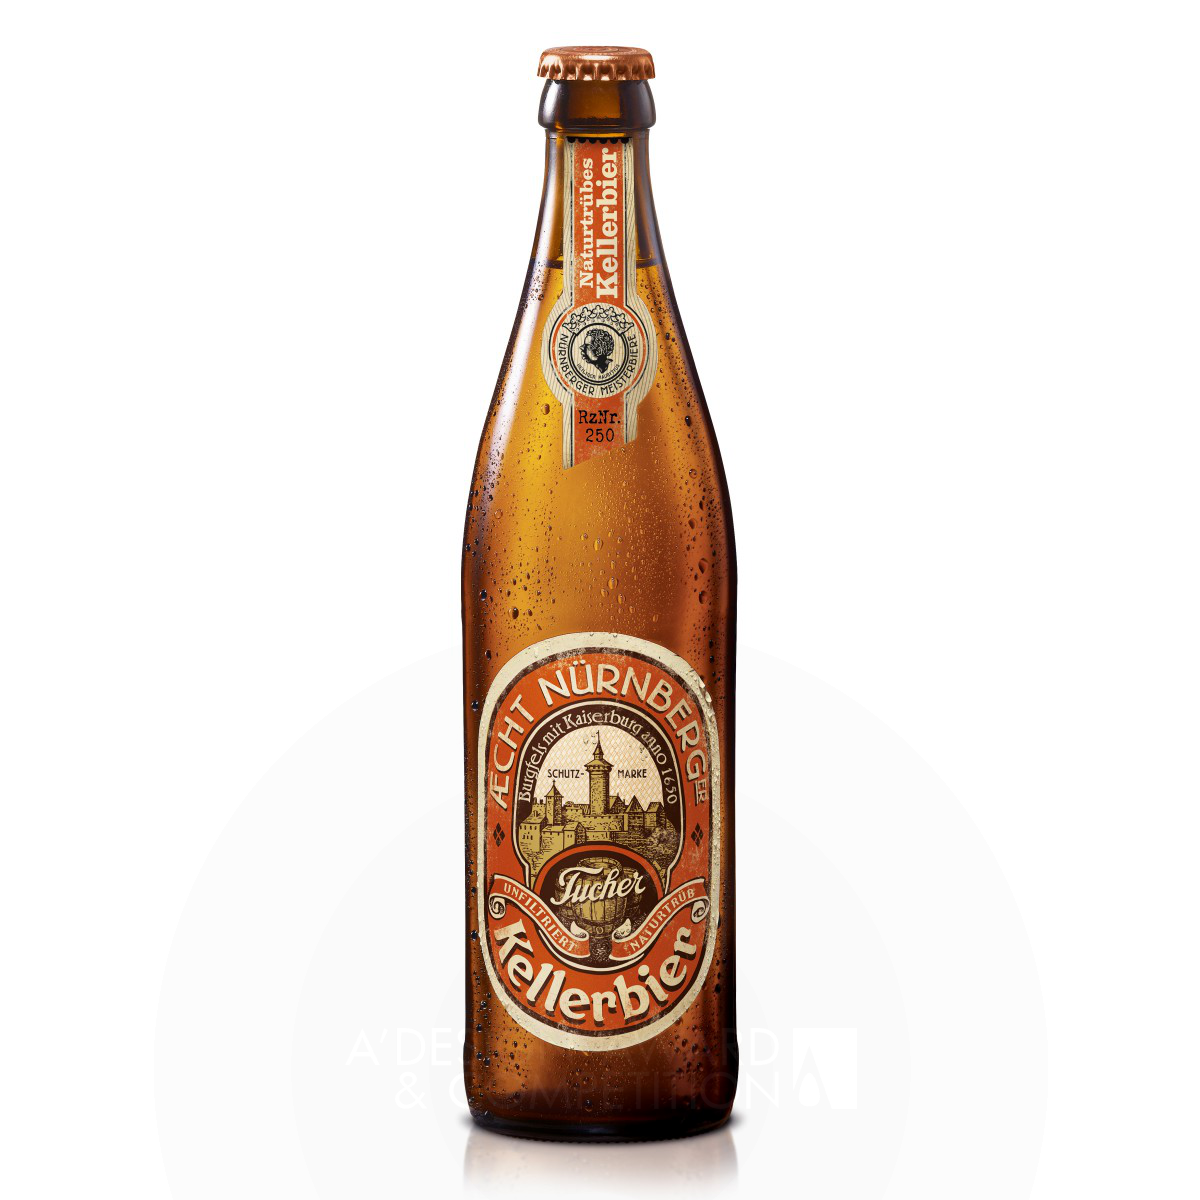 AEcht Nuernberger Kellerbier Bavarian Beer Packaging Design